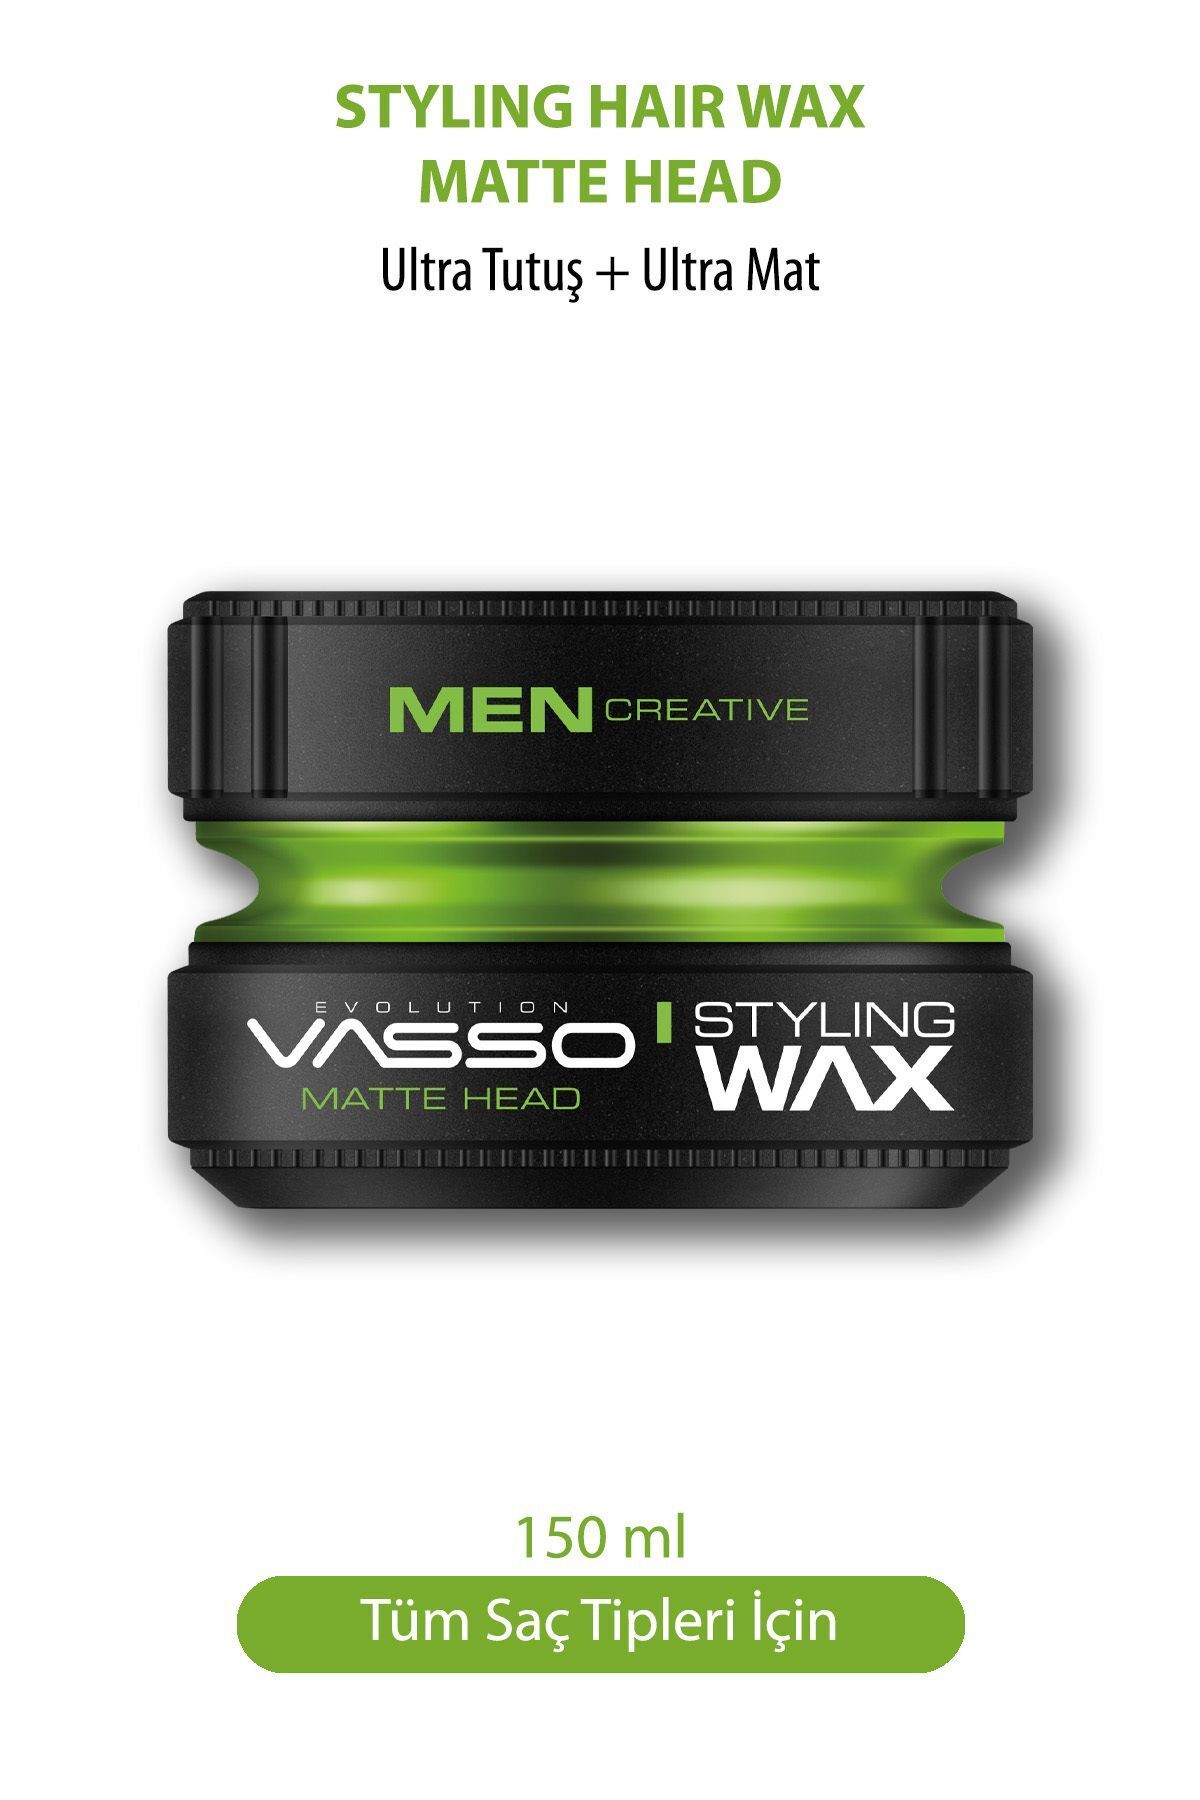 Vasso Men 24 Saat Ultra Güçlü Sert Tutuş Ve Ultra Mat Görünüm Sağlayan Killi Matte Head Wax 150 ml